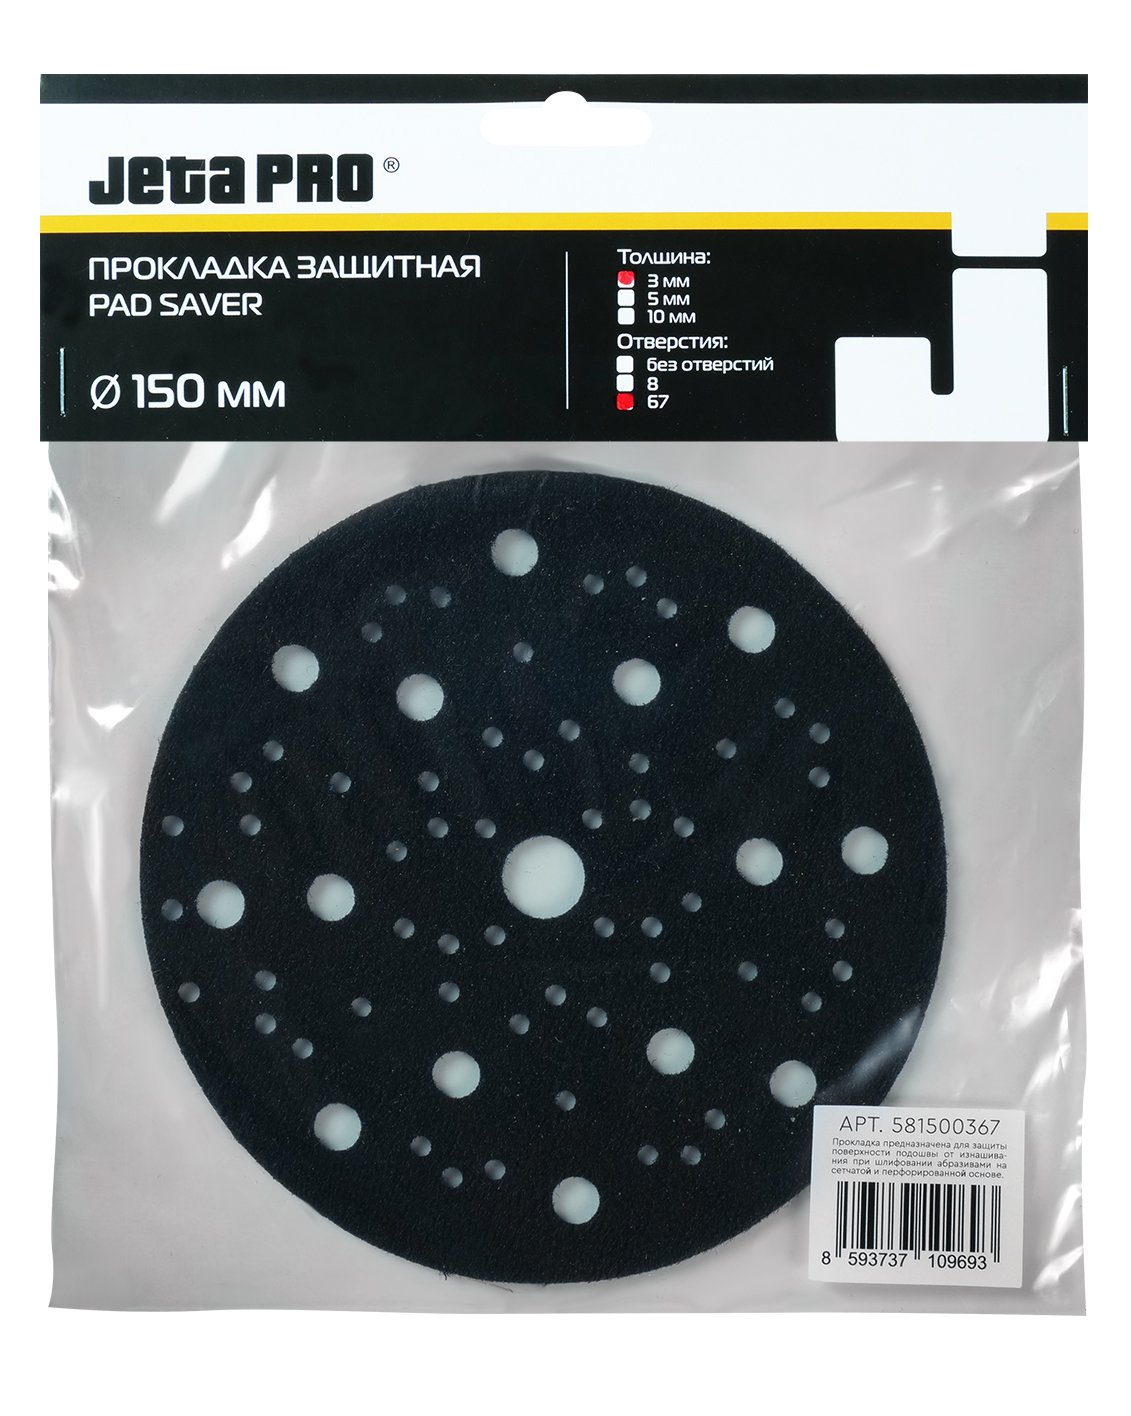 JETA PRO Прокладка защитная на 150 мм, 67 отв...